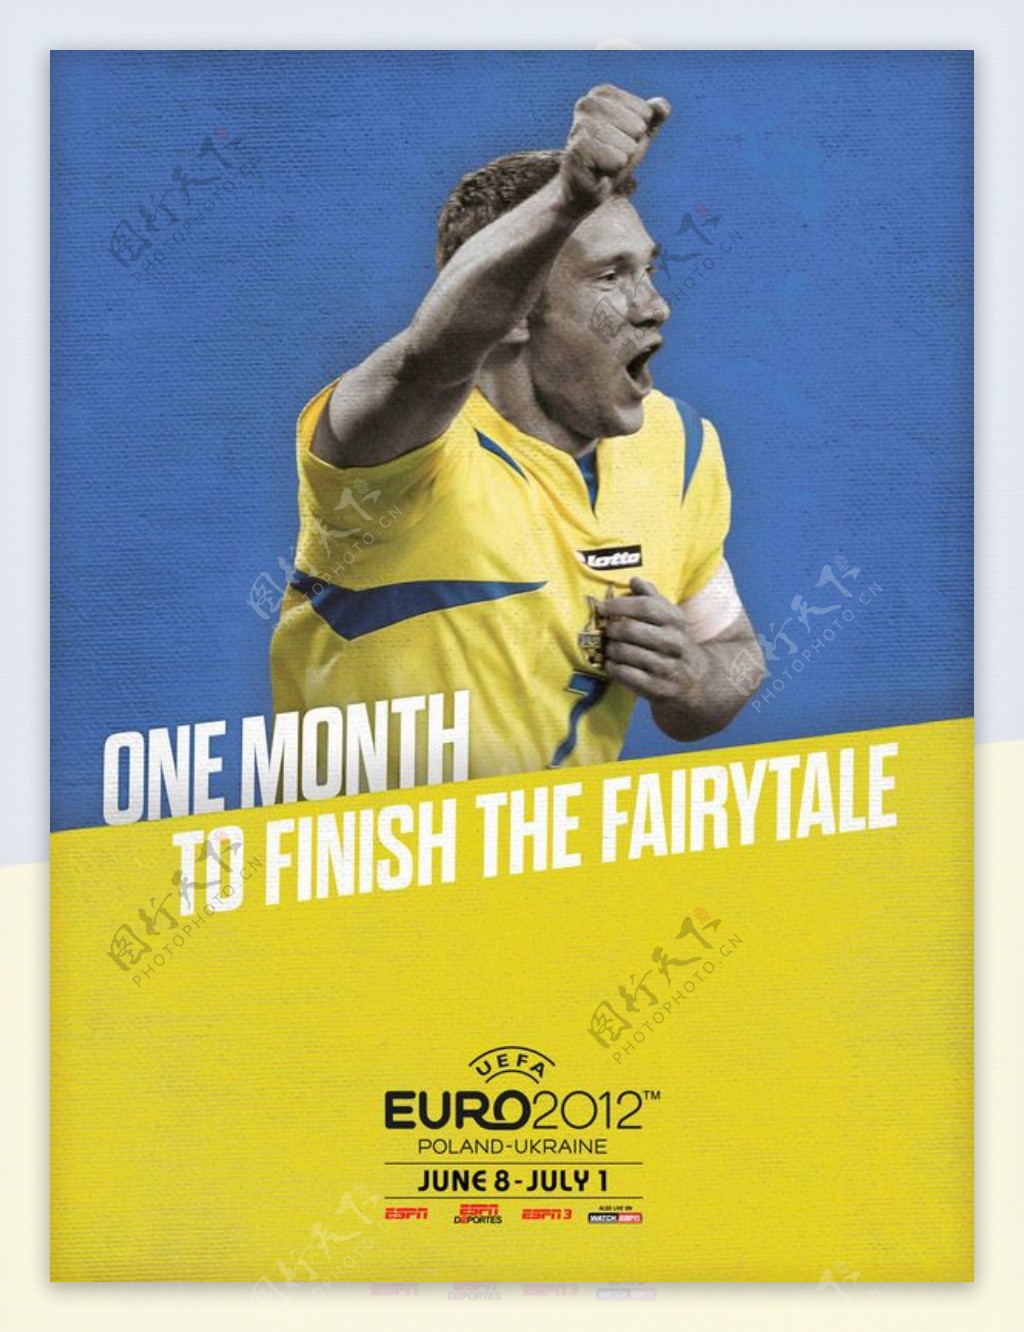 位图主题2012欧洲杯人物男人免费素材